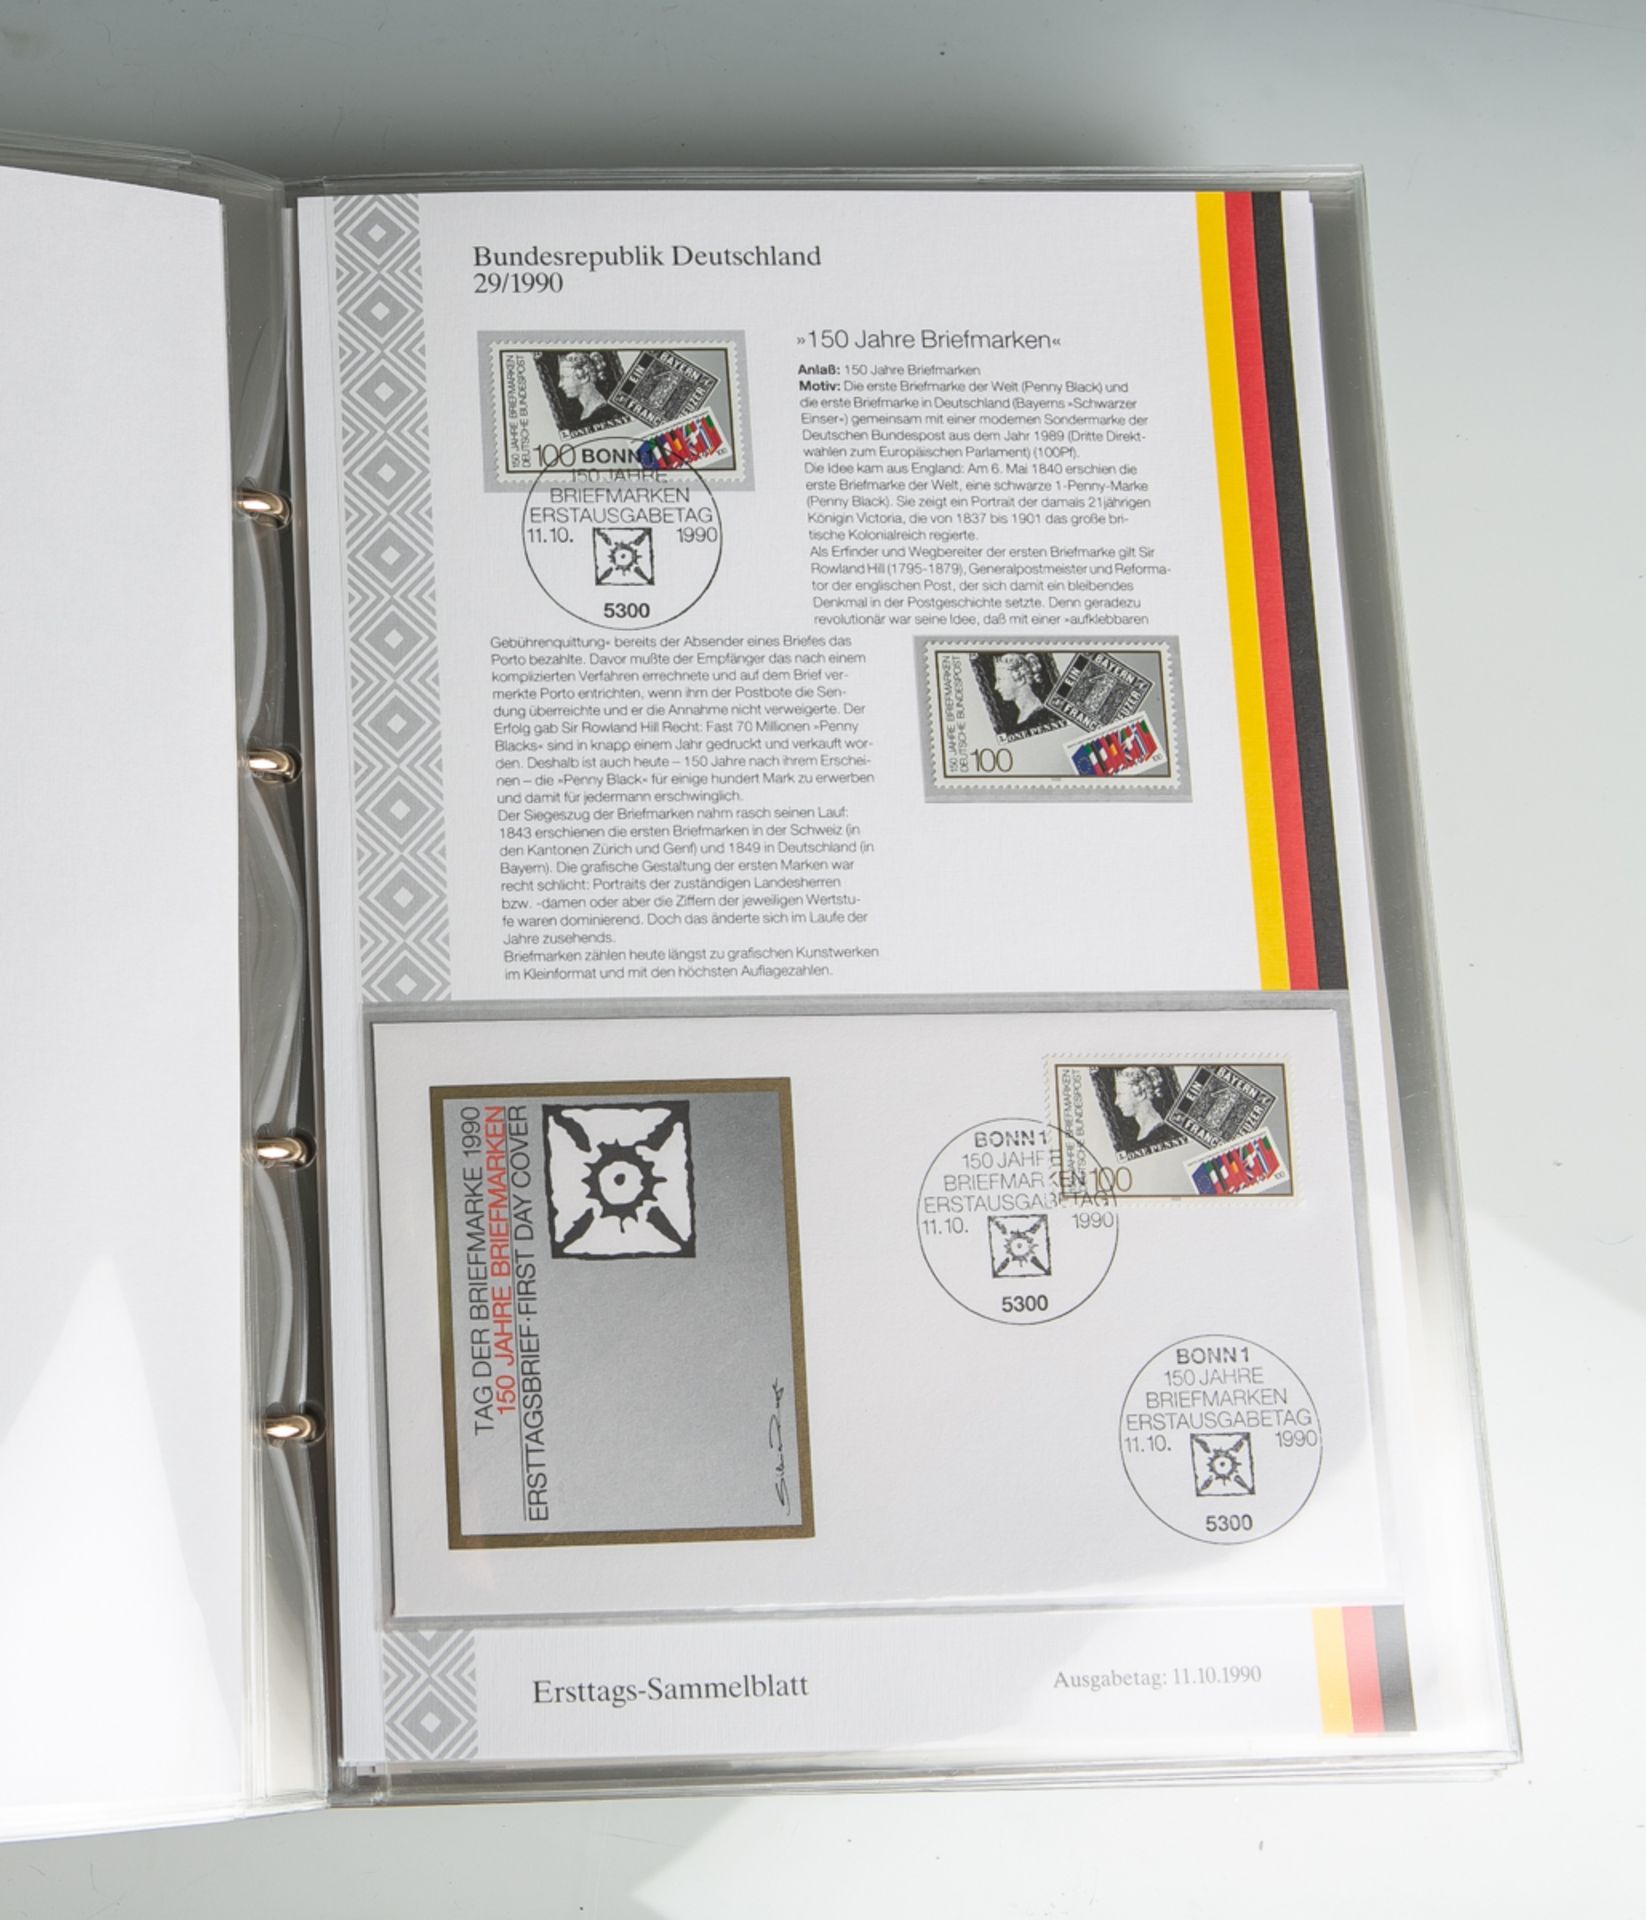 Album m. Ersttags-Sammelblättern (BRD, 1990 - 1991), 50 Blätter, Nr. 27A/1990 bis 33d/1990u. 1a/1991